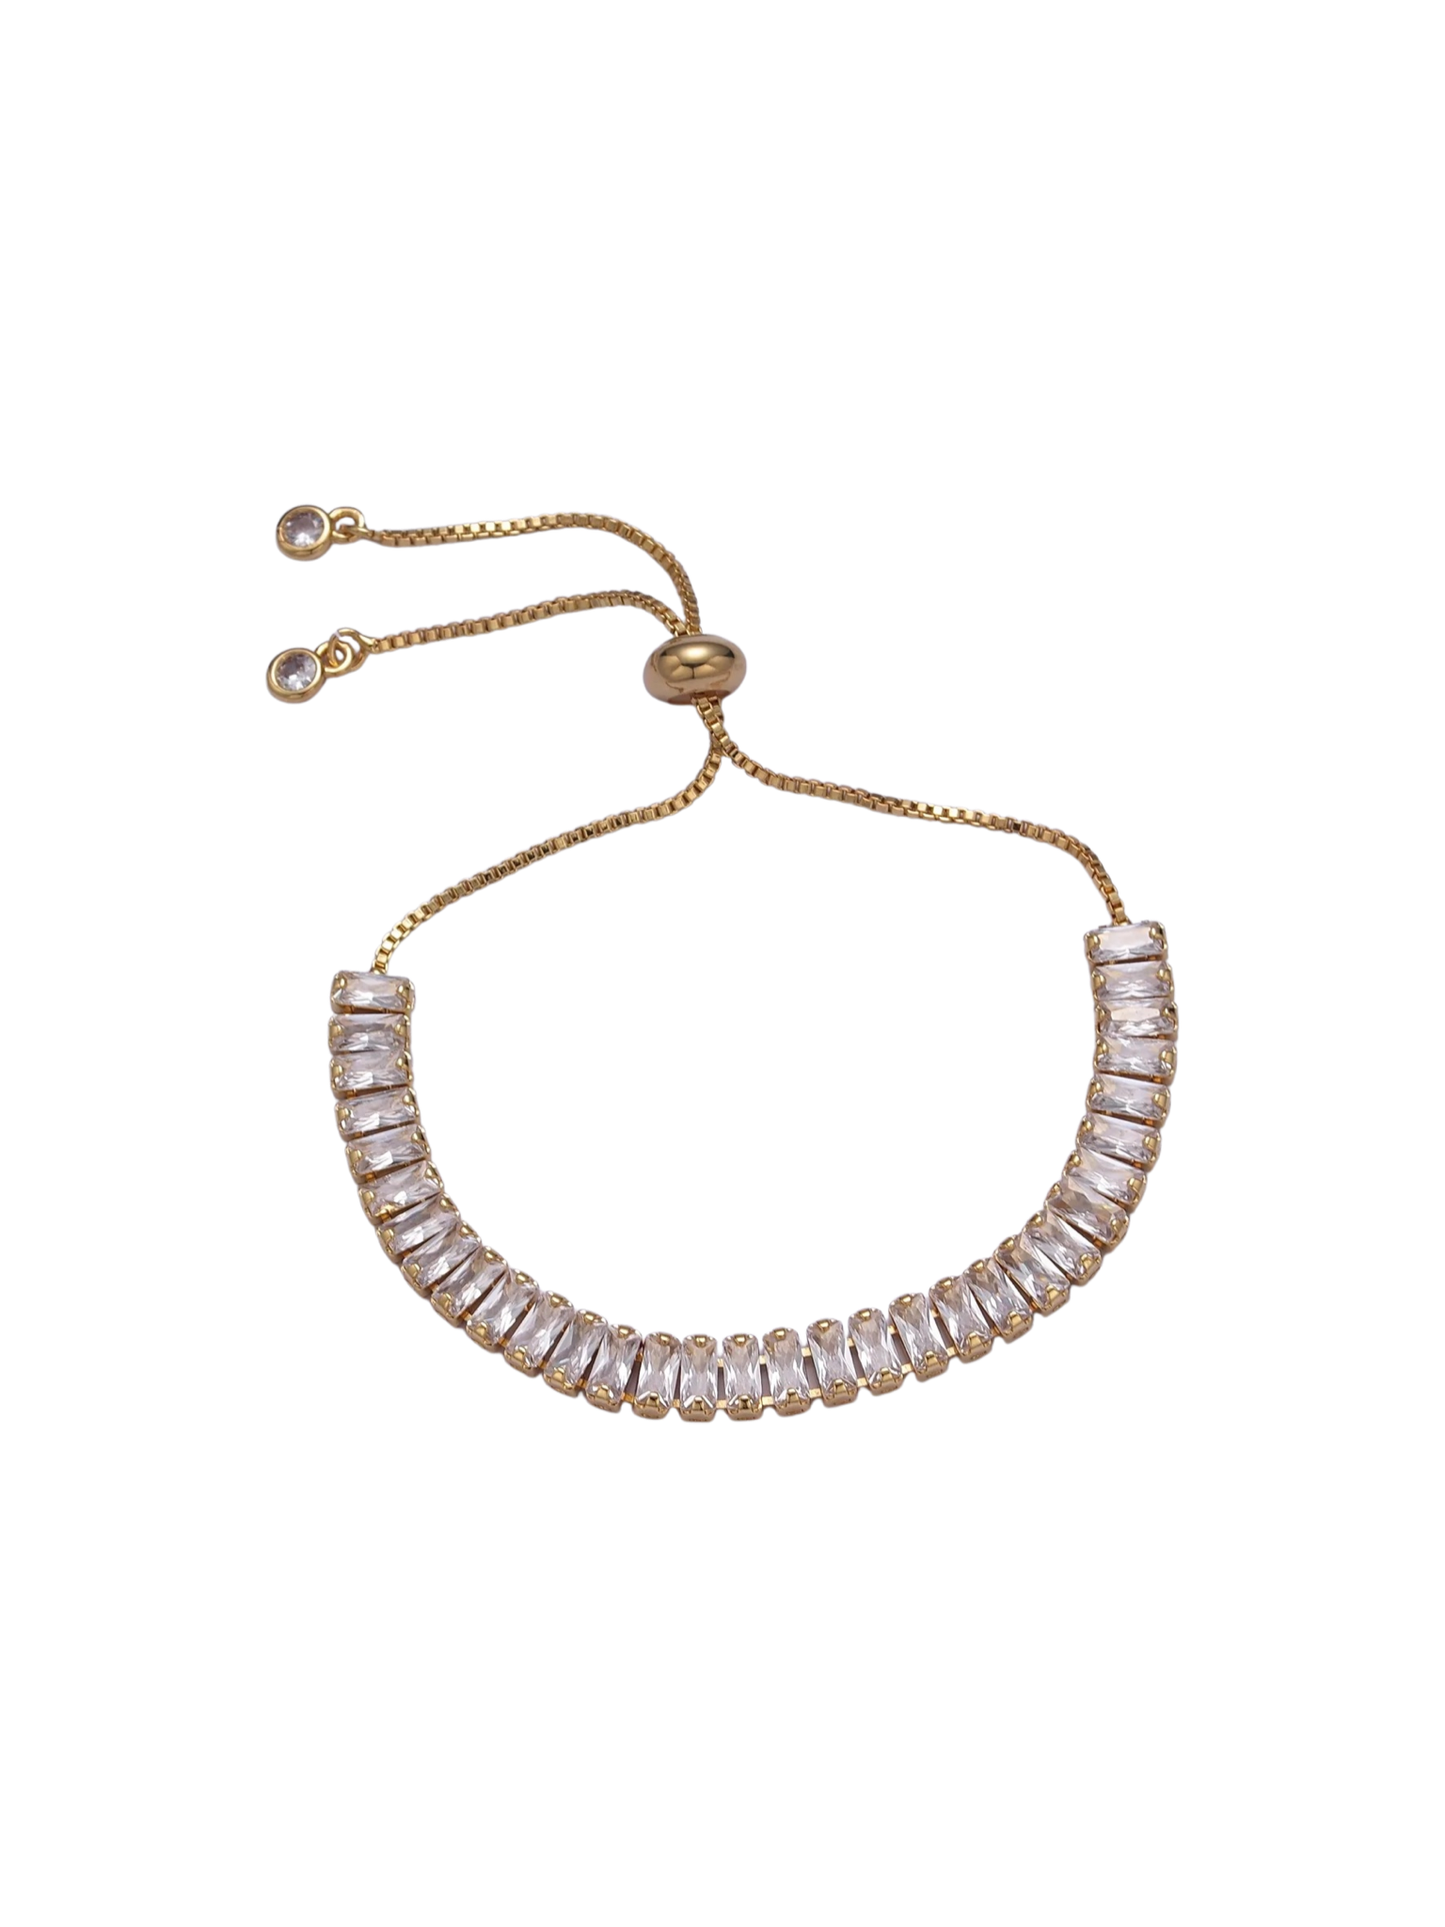 Gold Filled Drawstring Baguette Tennis Bracelet